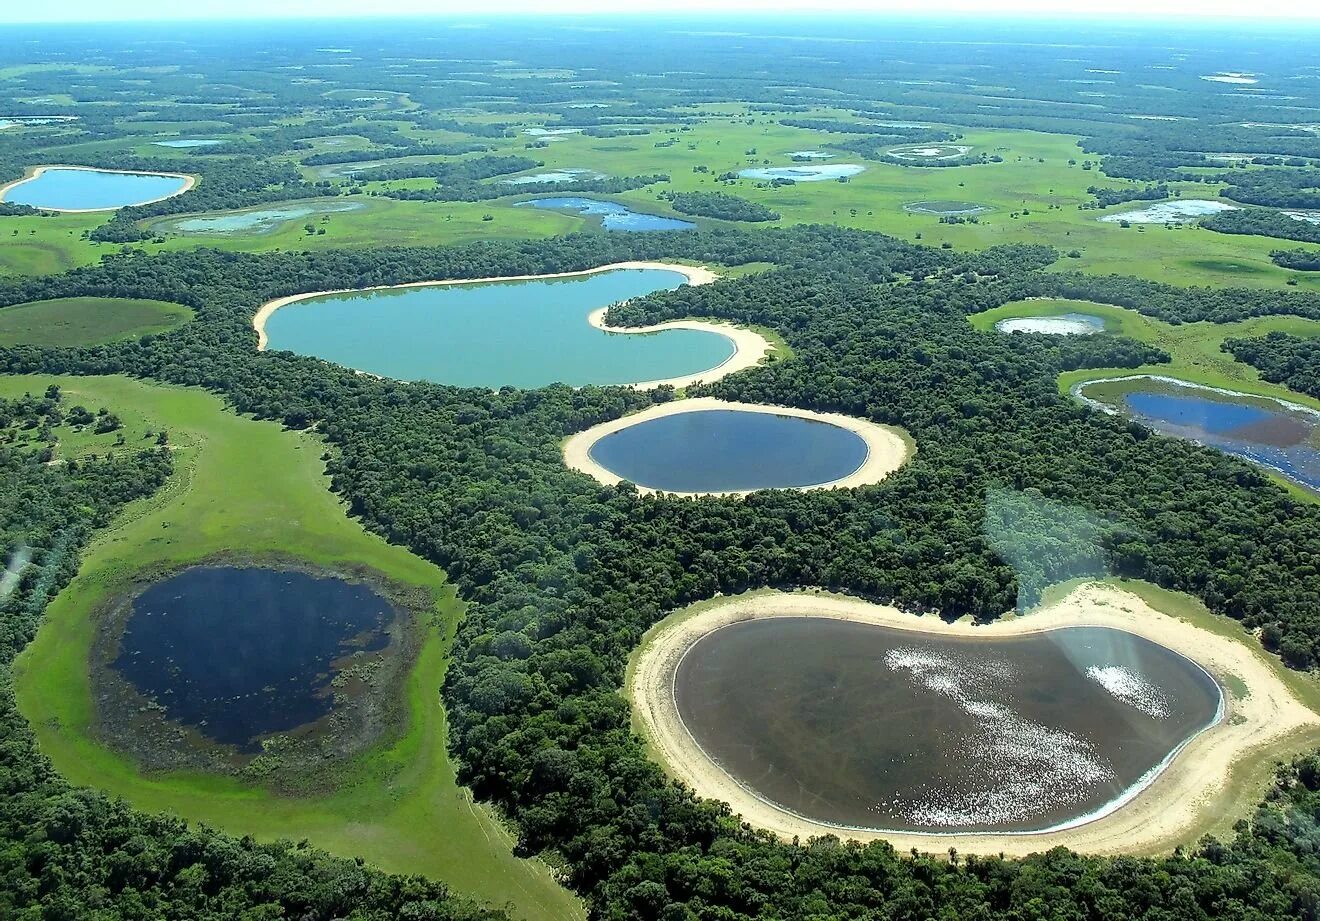 Пресноводное озеро в латинской америке самое большое